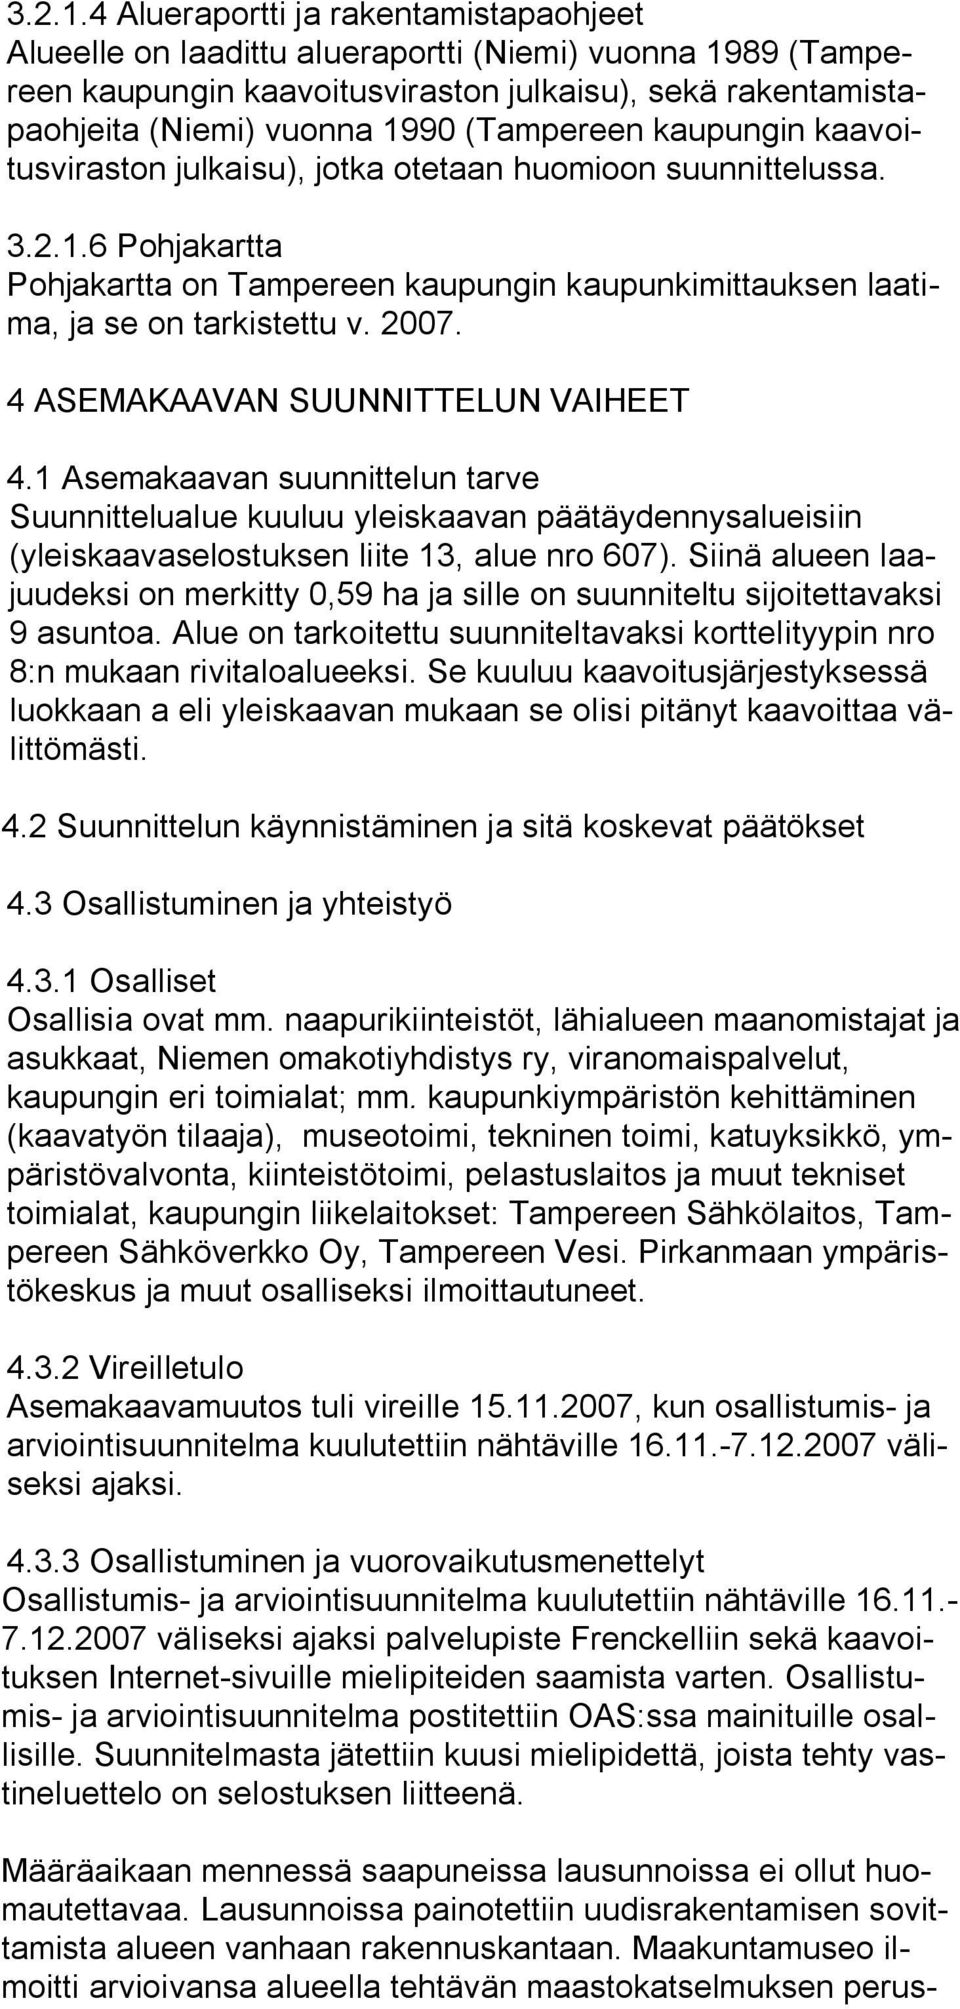 (Tampereen kaupungin kaavoitusviraston julkaisu), jotka otetaan huomioon suunnittelussa. 6 Pohjakartta Pohjakartta on Tampereen kaupungin kaupunkimittauksen laatima, ja se on tarkistettu v. 2007.